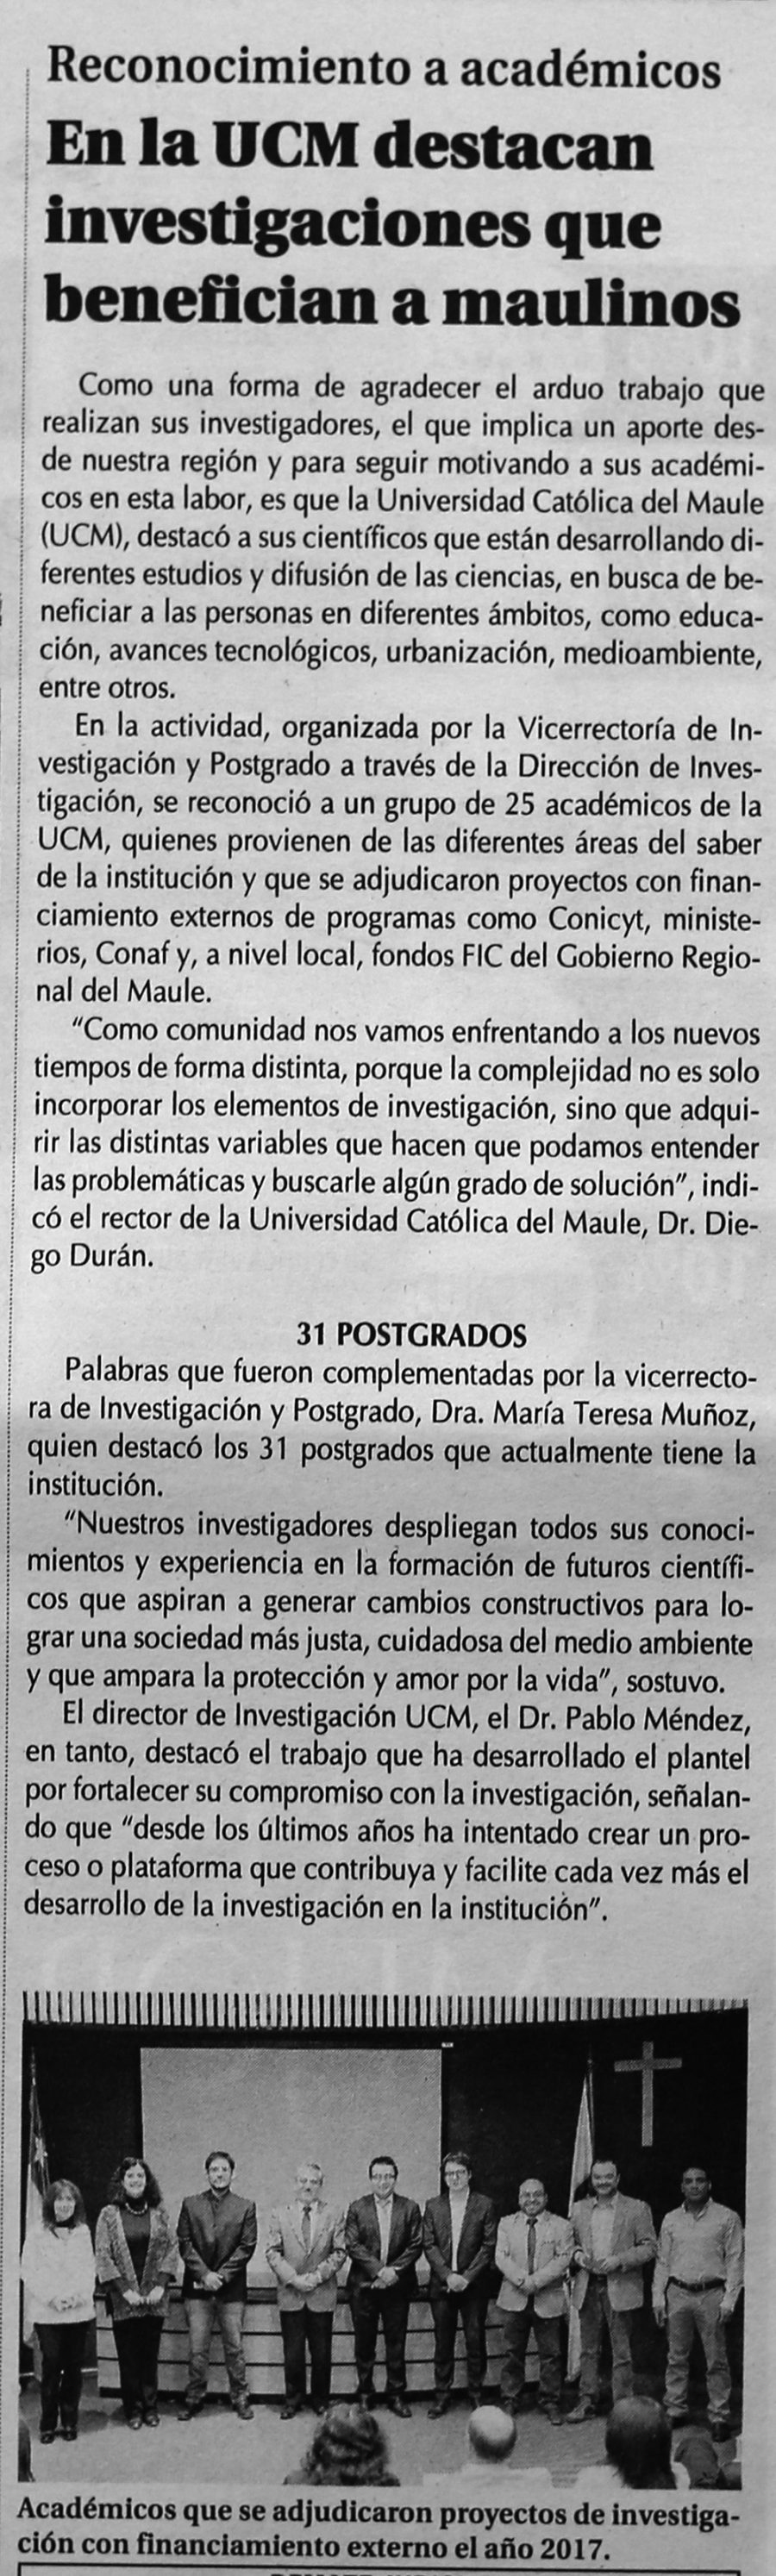 25 de marzo en Diario El Centro: “En la UCM destacan investigaciones que benefician a maulinos”